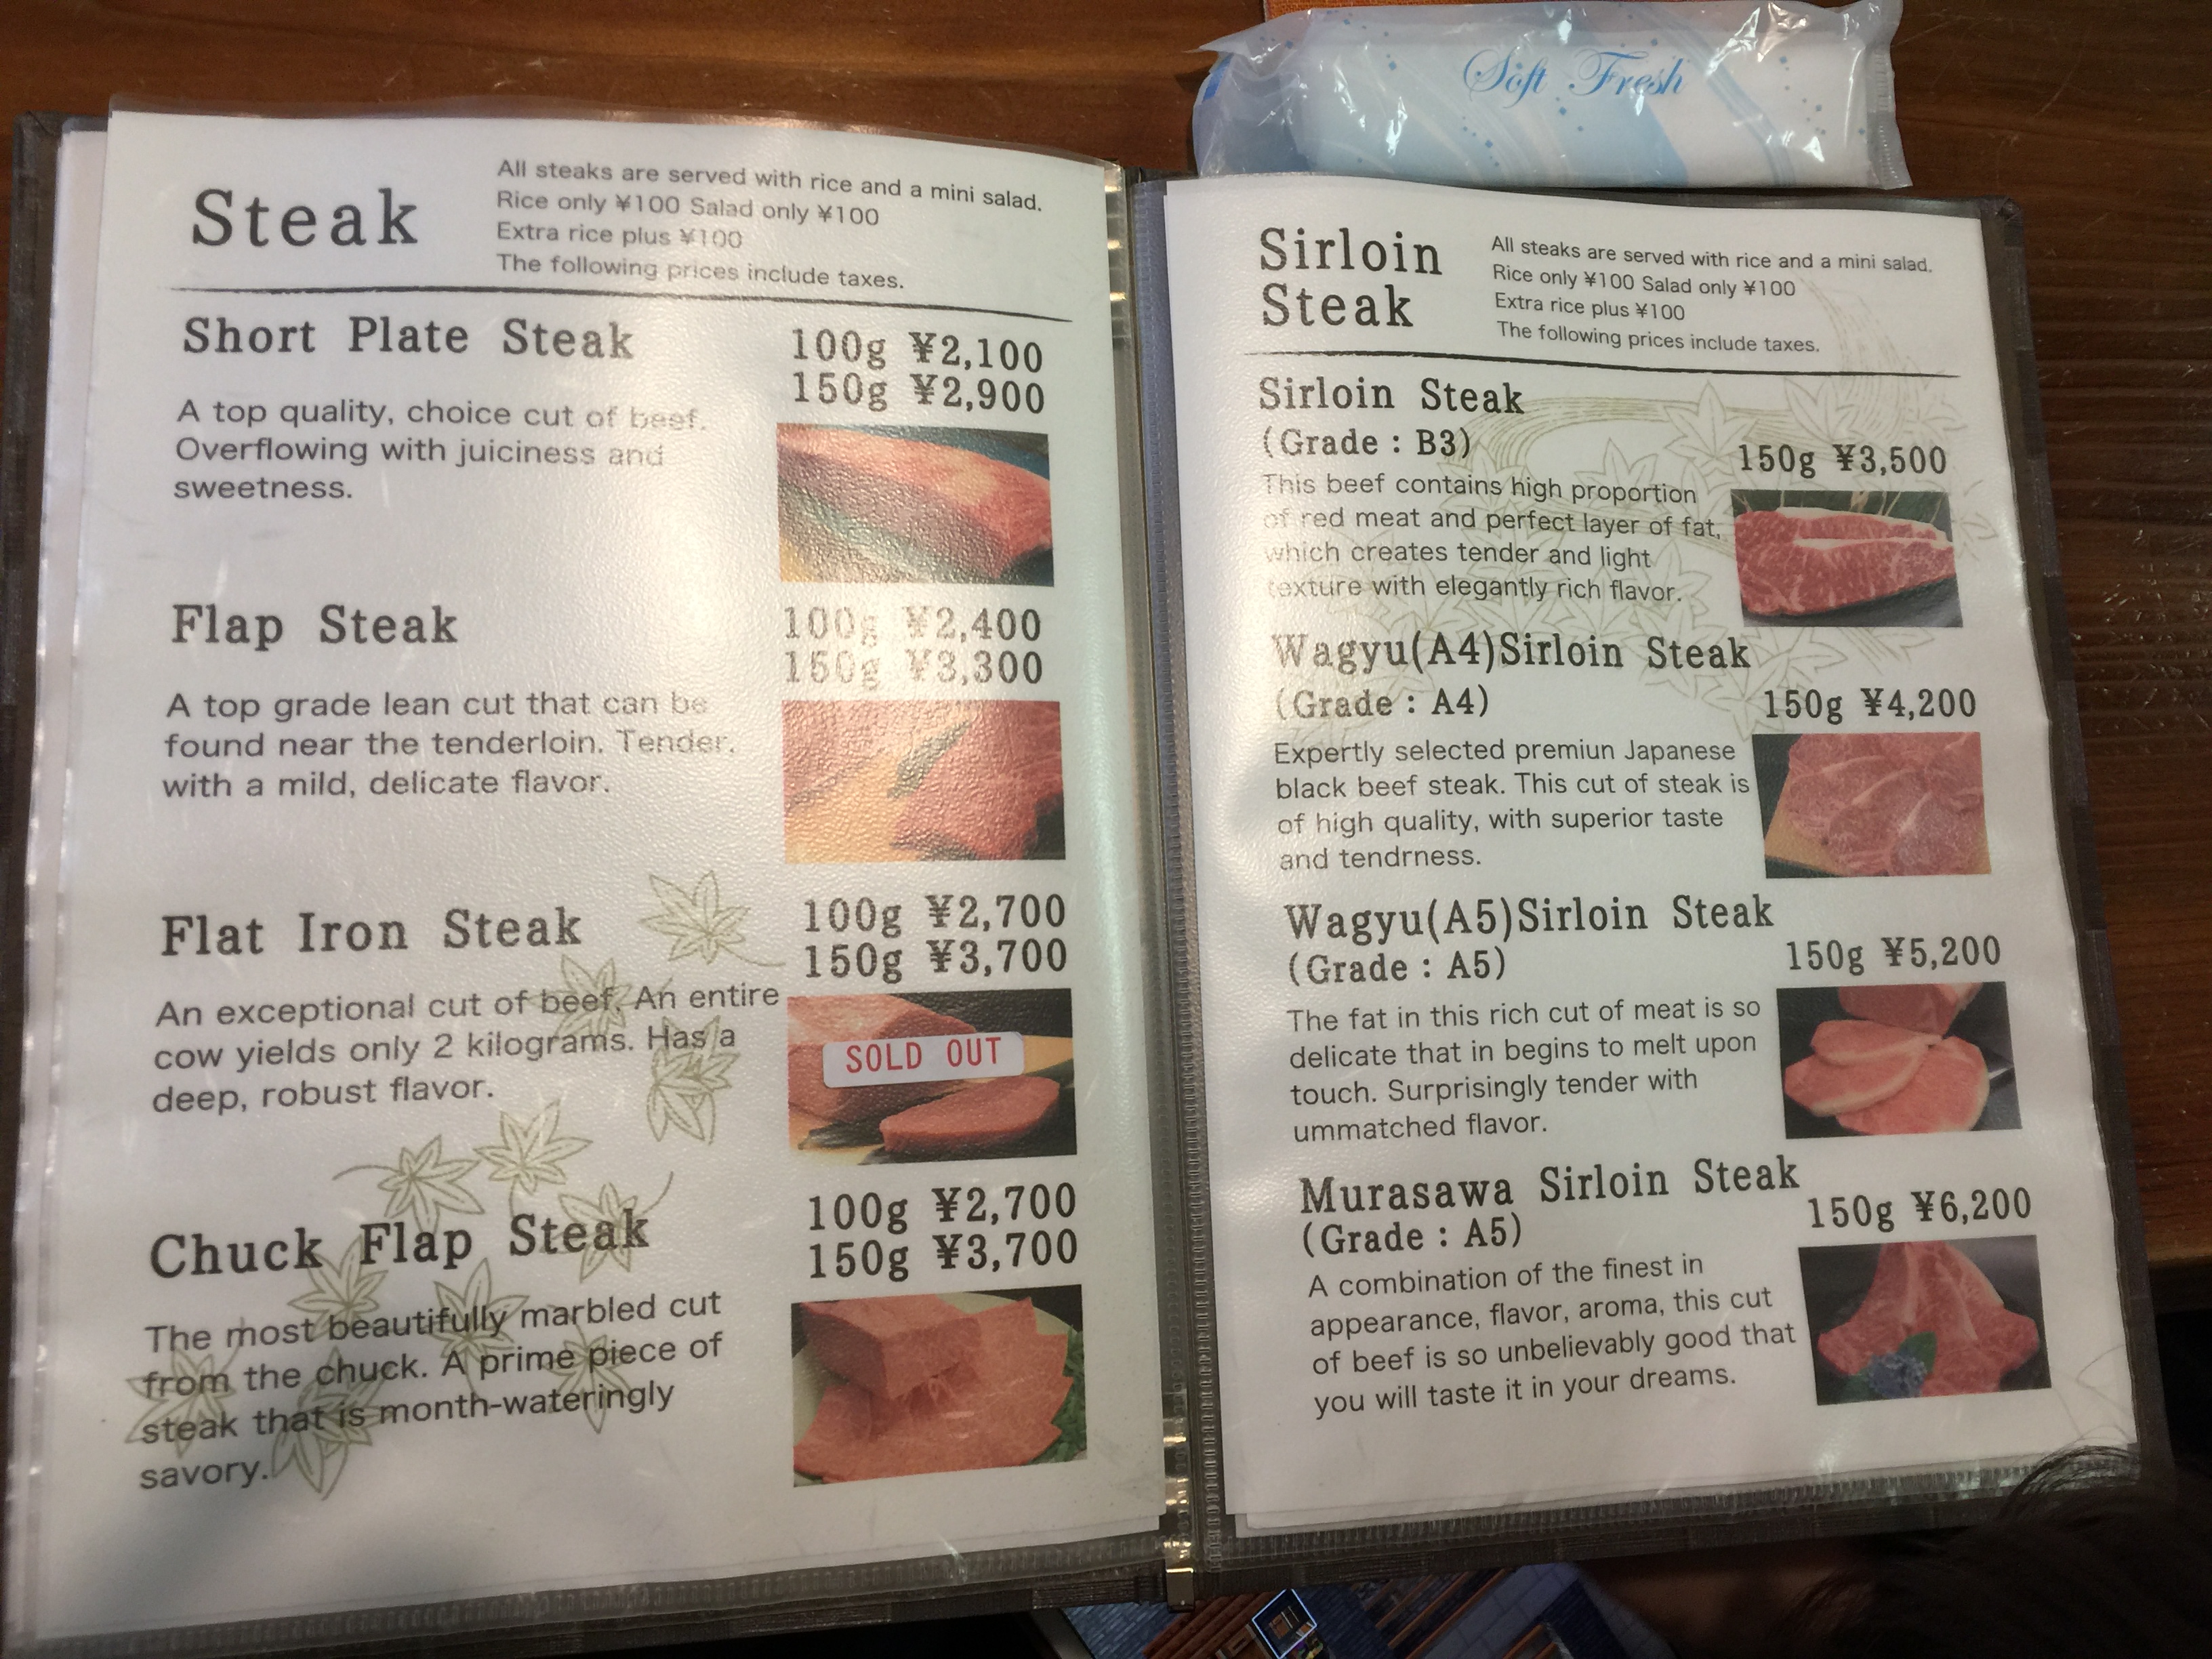 Menu for steaks